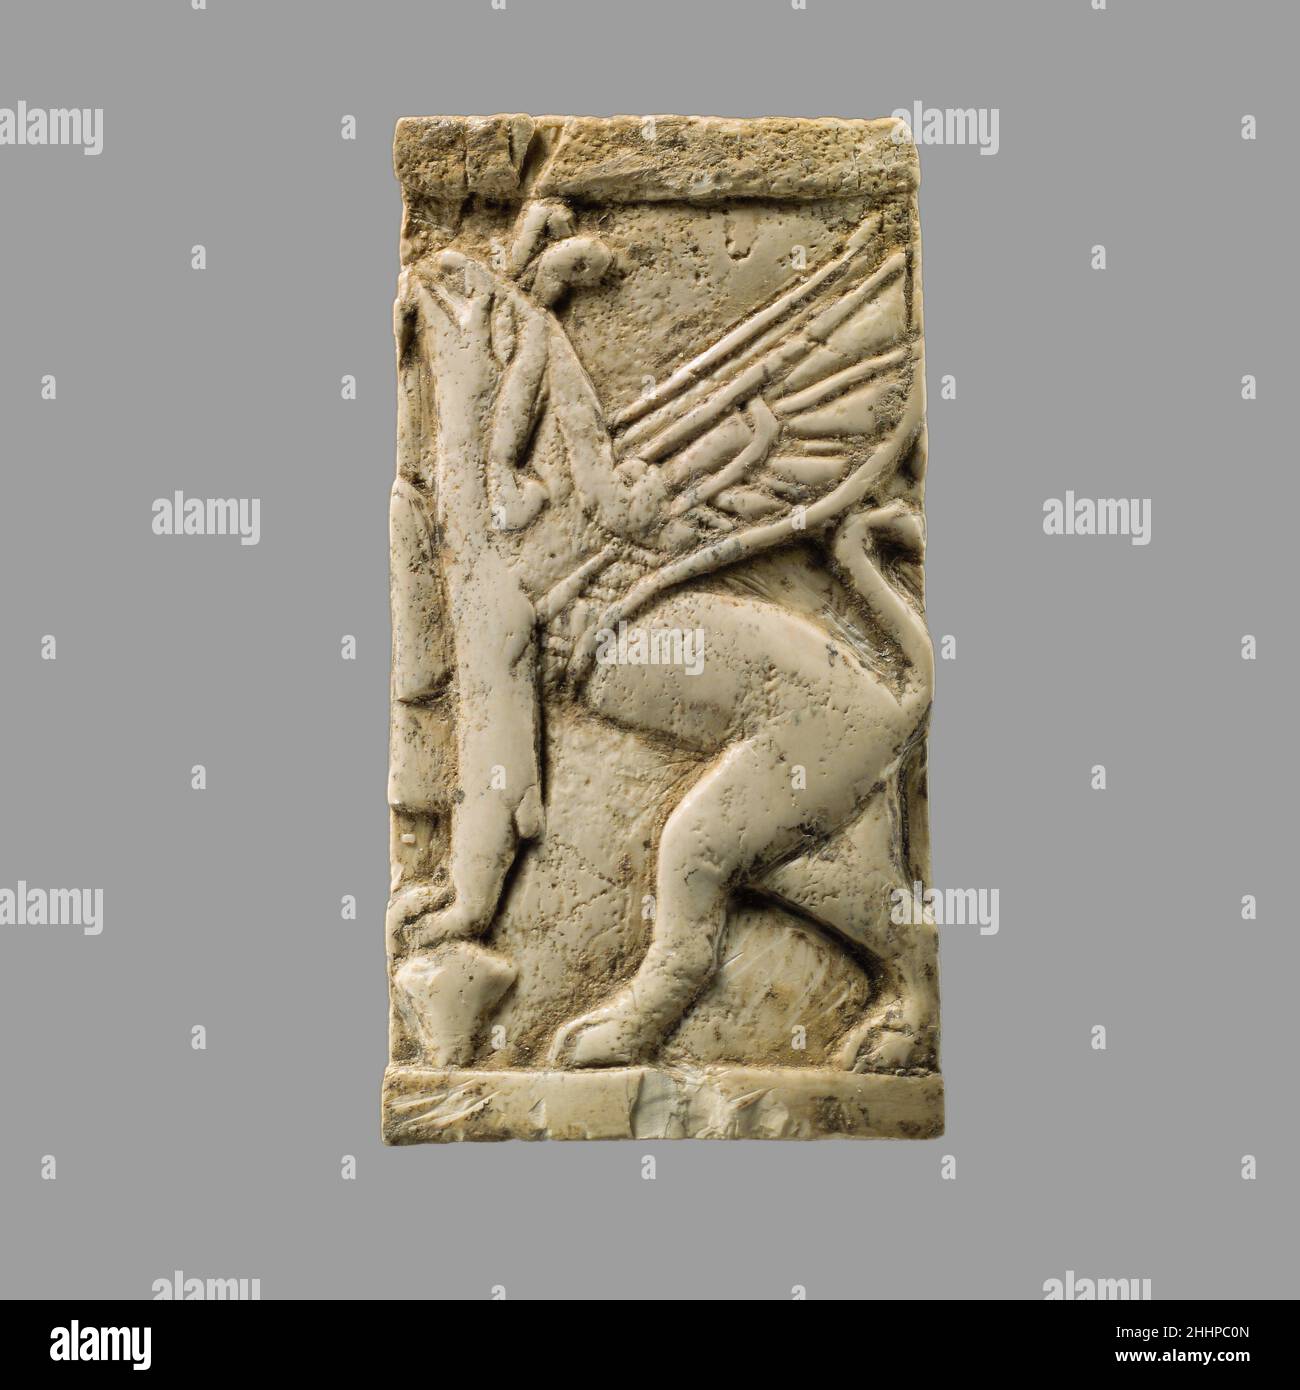 Plaque mit Gripin ca. 8th.–7th. Jahrhundert v. Chr. Assyrisch Dieses kleine Stück Elfenbein ist in einem niedrigen Relief mit dem Bild eines Greiflins geschnitzt, einer fantastischen Kreatur, die den Körper eines Löwen mit dem Kopf eines Greifvogels kombiniert, dargestellt mit oder ohne Flügel. Der Greif ruht seine Vorderbeine auf einer pflanzenähnlichen Form, die aus der Grundlinie steigt und seinen Kopf hebt, vielleicht um am oberen Teil der Pflanze zu grasen, was ursprünglich auf der nebenstehenden Plakette links abgebildet worden sein könnte. Geschnitzte Elfenbeinstücke wie diese wurden in der Produktion von Elite-Möbeln im frühen ersten Jahrtausend weit verbreitet Stockfoto